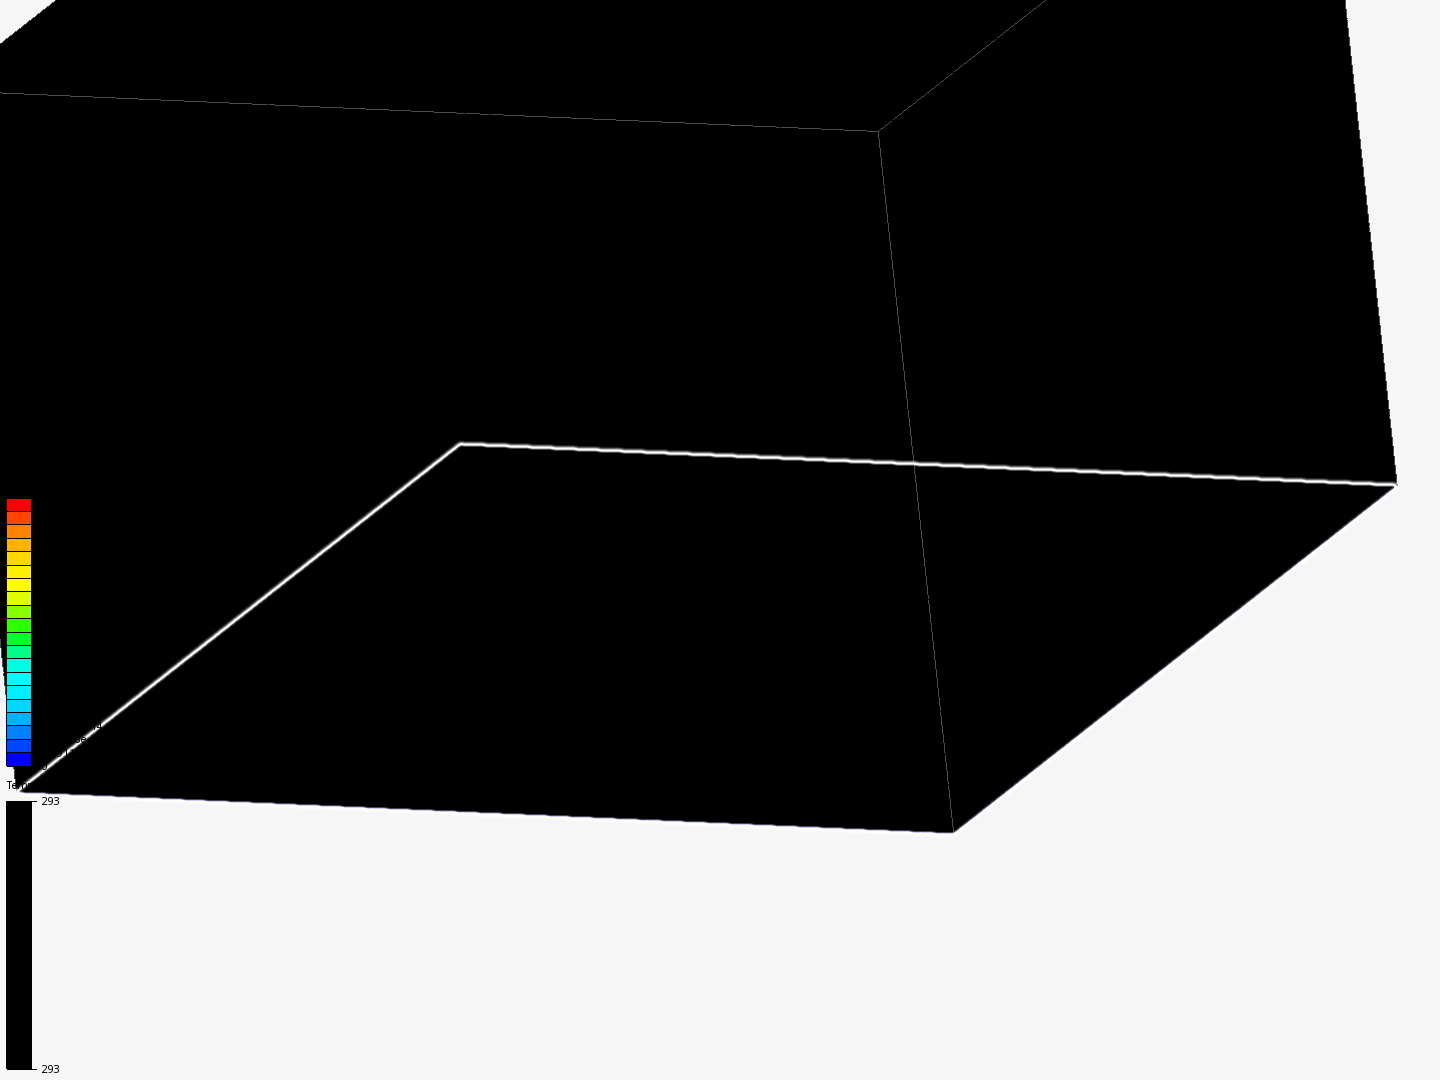 mesh analysis image